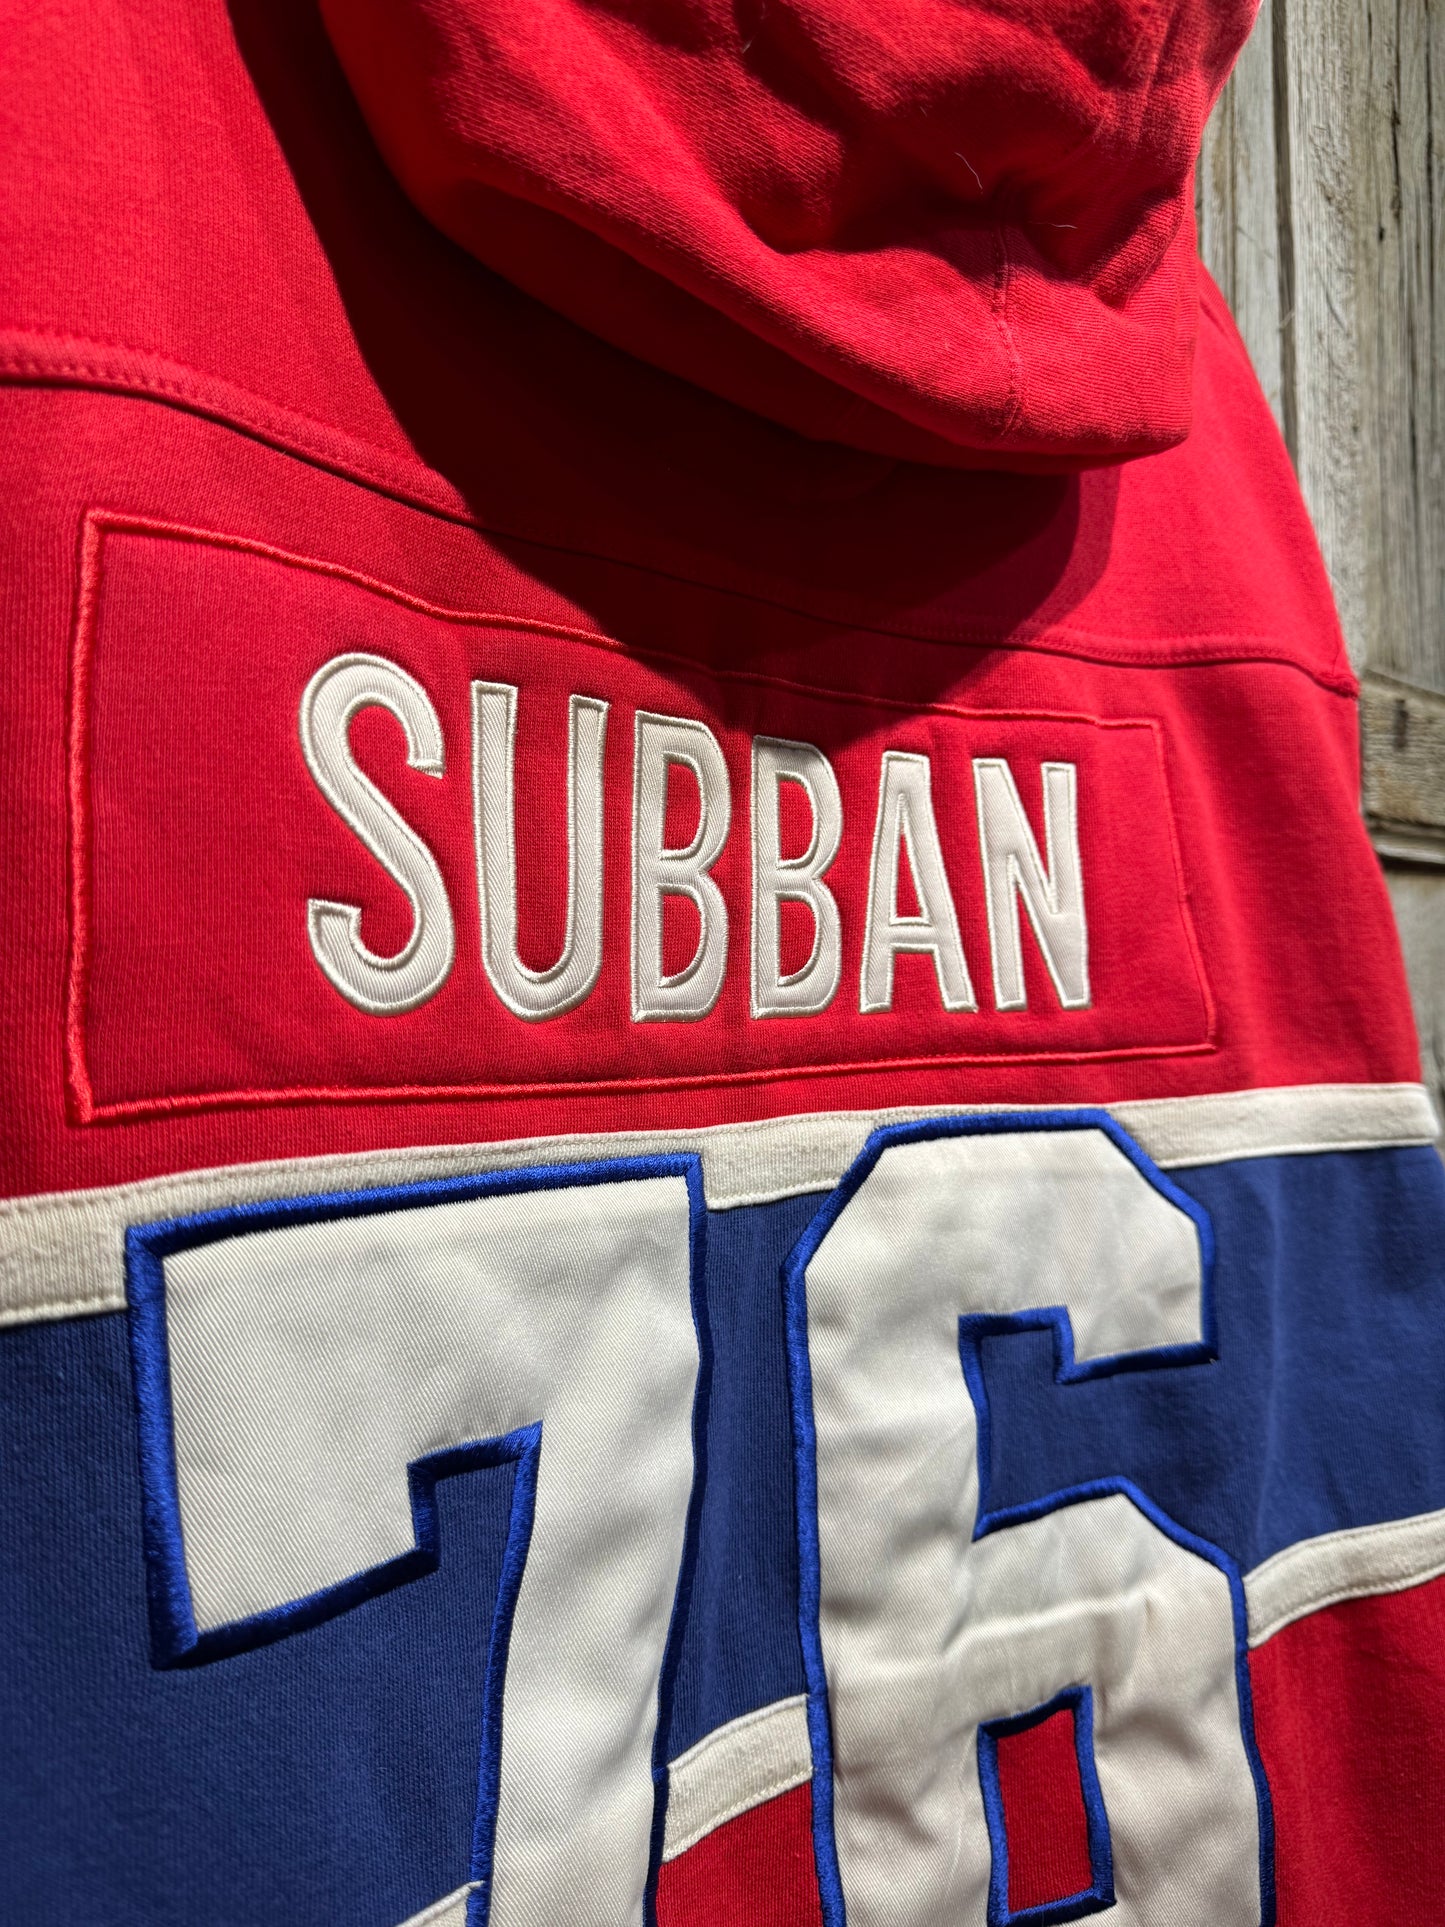 Vintage Montreal Canadiens Sonnan 76 Jersey Hoodie